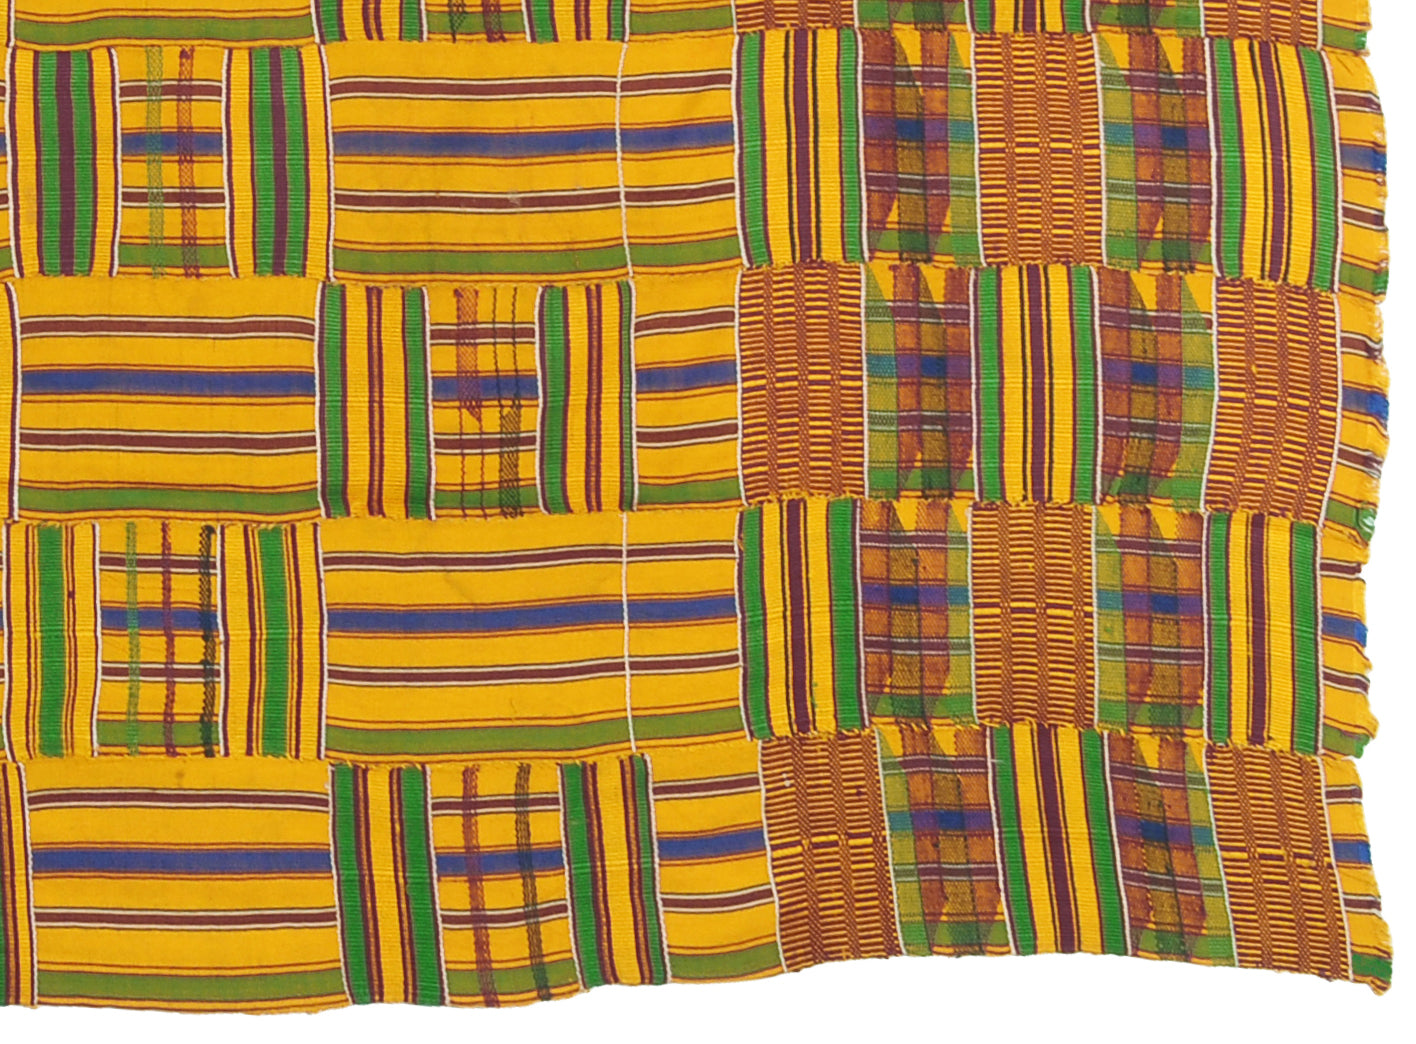 Αυθεντικό ύφασμα Ashanti Kente της δεκαετίας του 1970 από την Γκάνα - Ταπετσαρία πολιτιστικού πλούτου